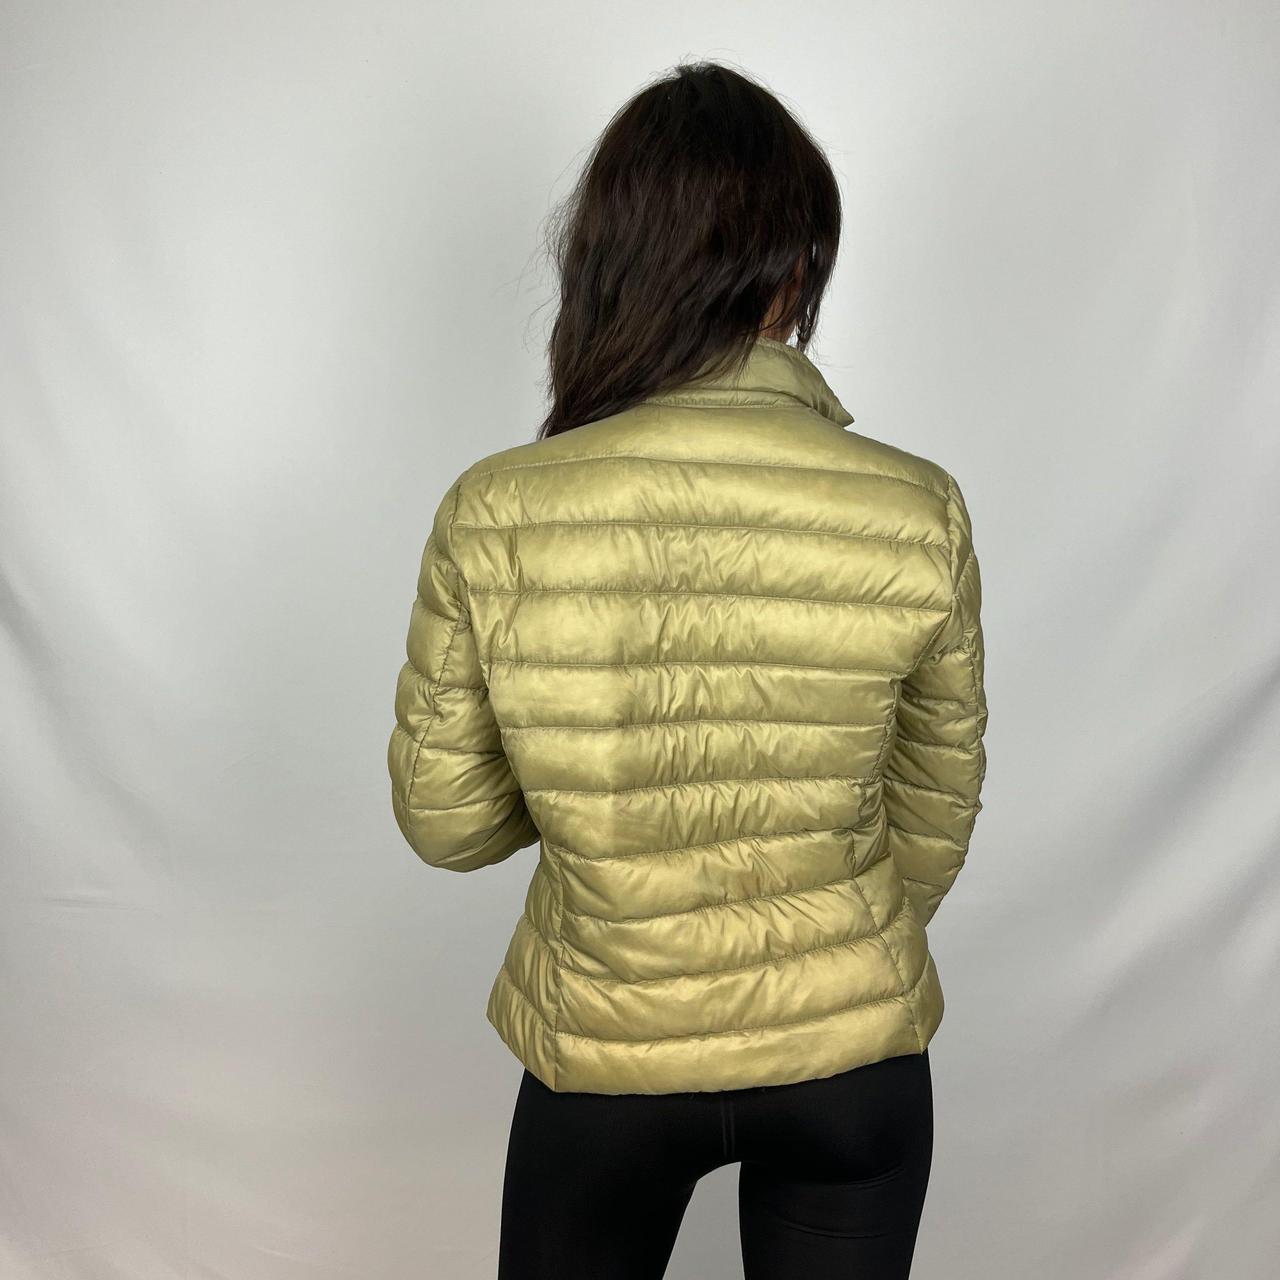 Vintage Moncler Gold Puffer-jacket (XS)🔥 Logo on... - Depop